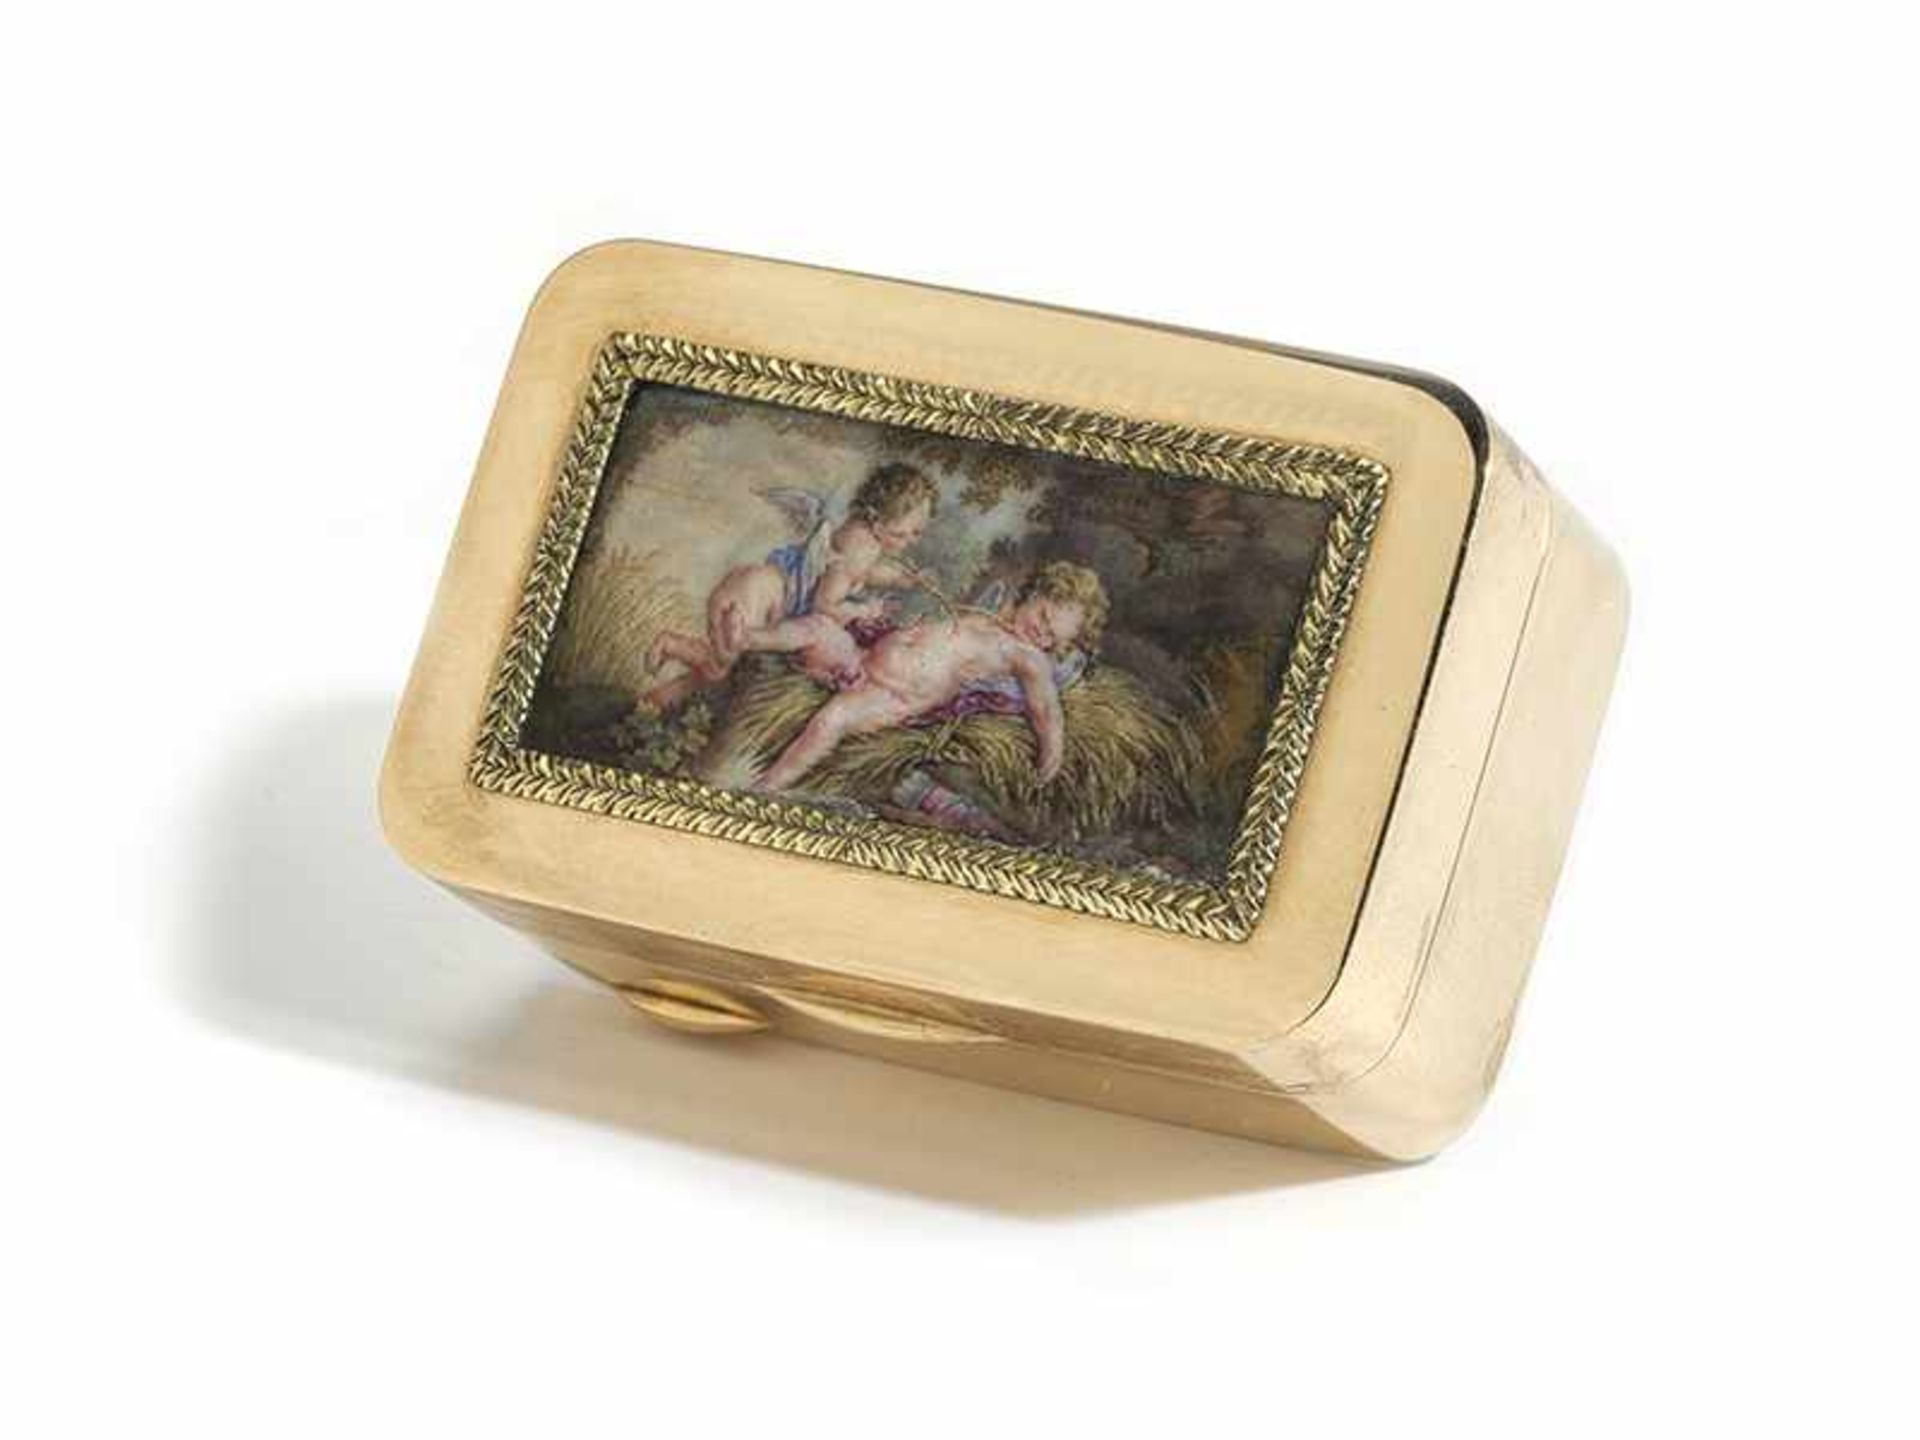 Römische Golddose mit Puttominiatur 2 x 5 x 3,3 cm. Gewicht: 61 g. Steckkante mit - Bild 2 aus 5